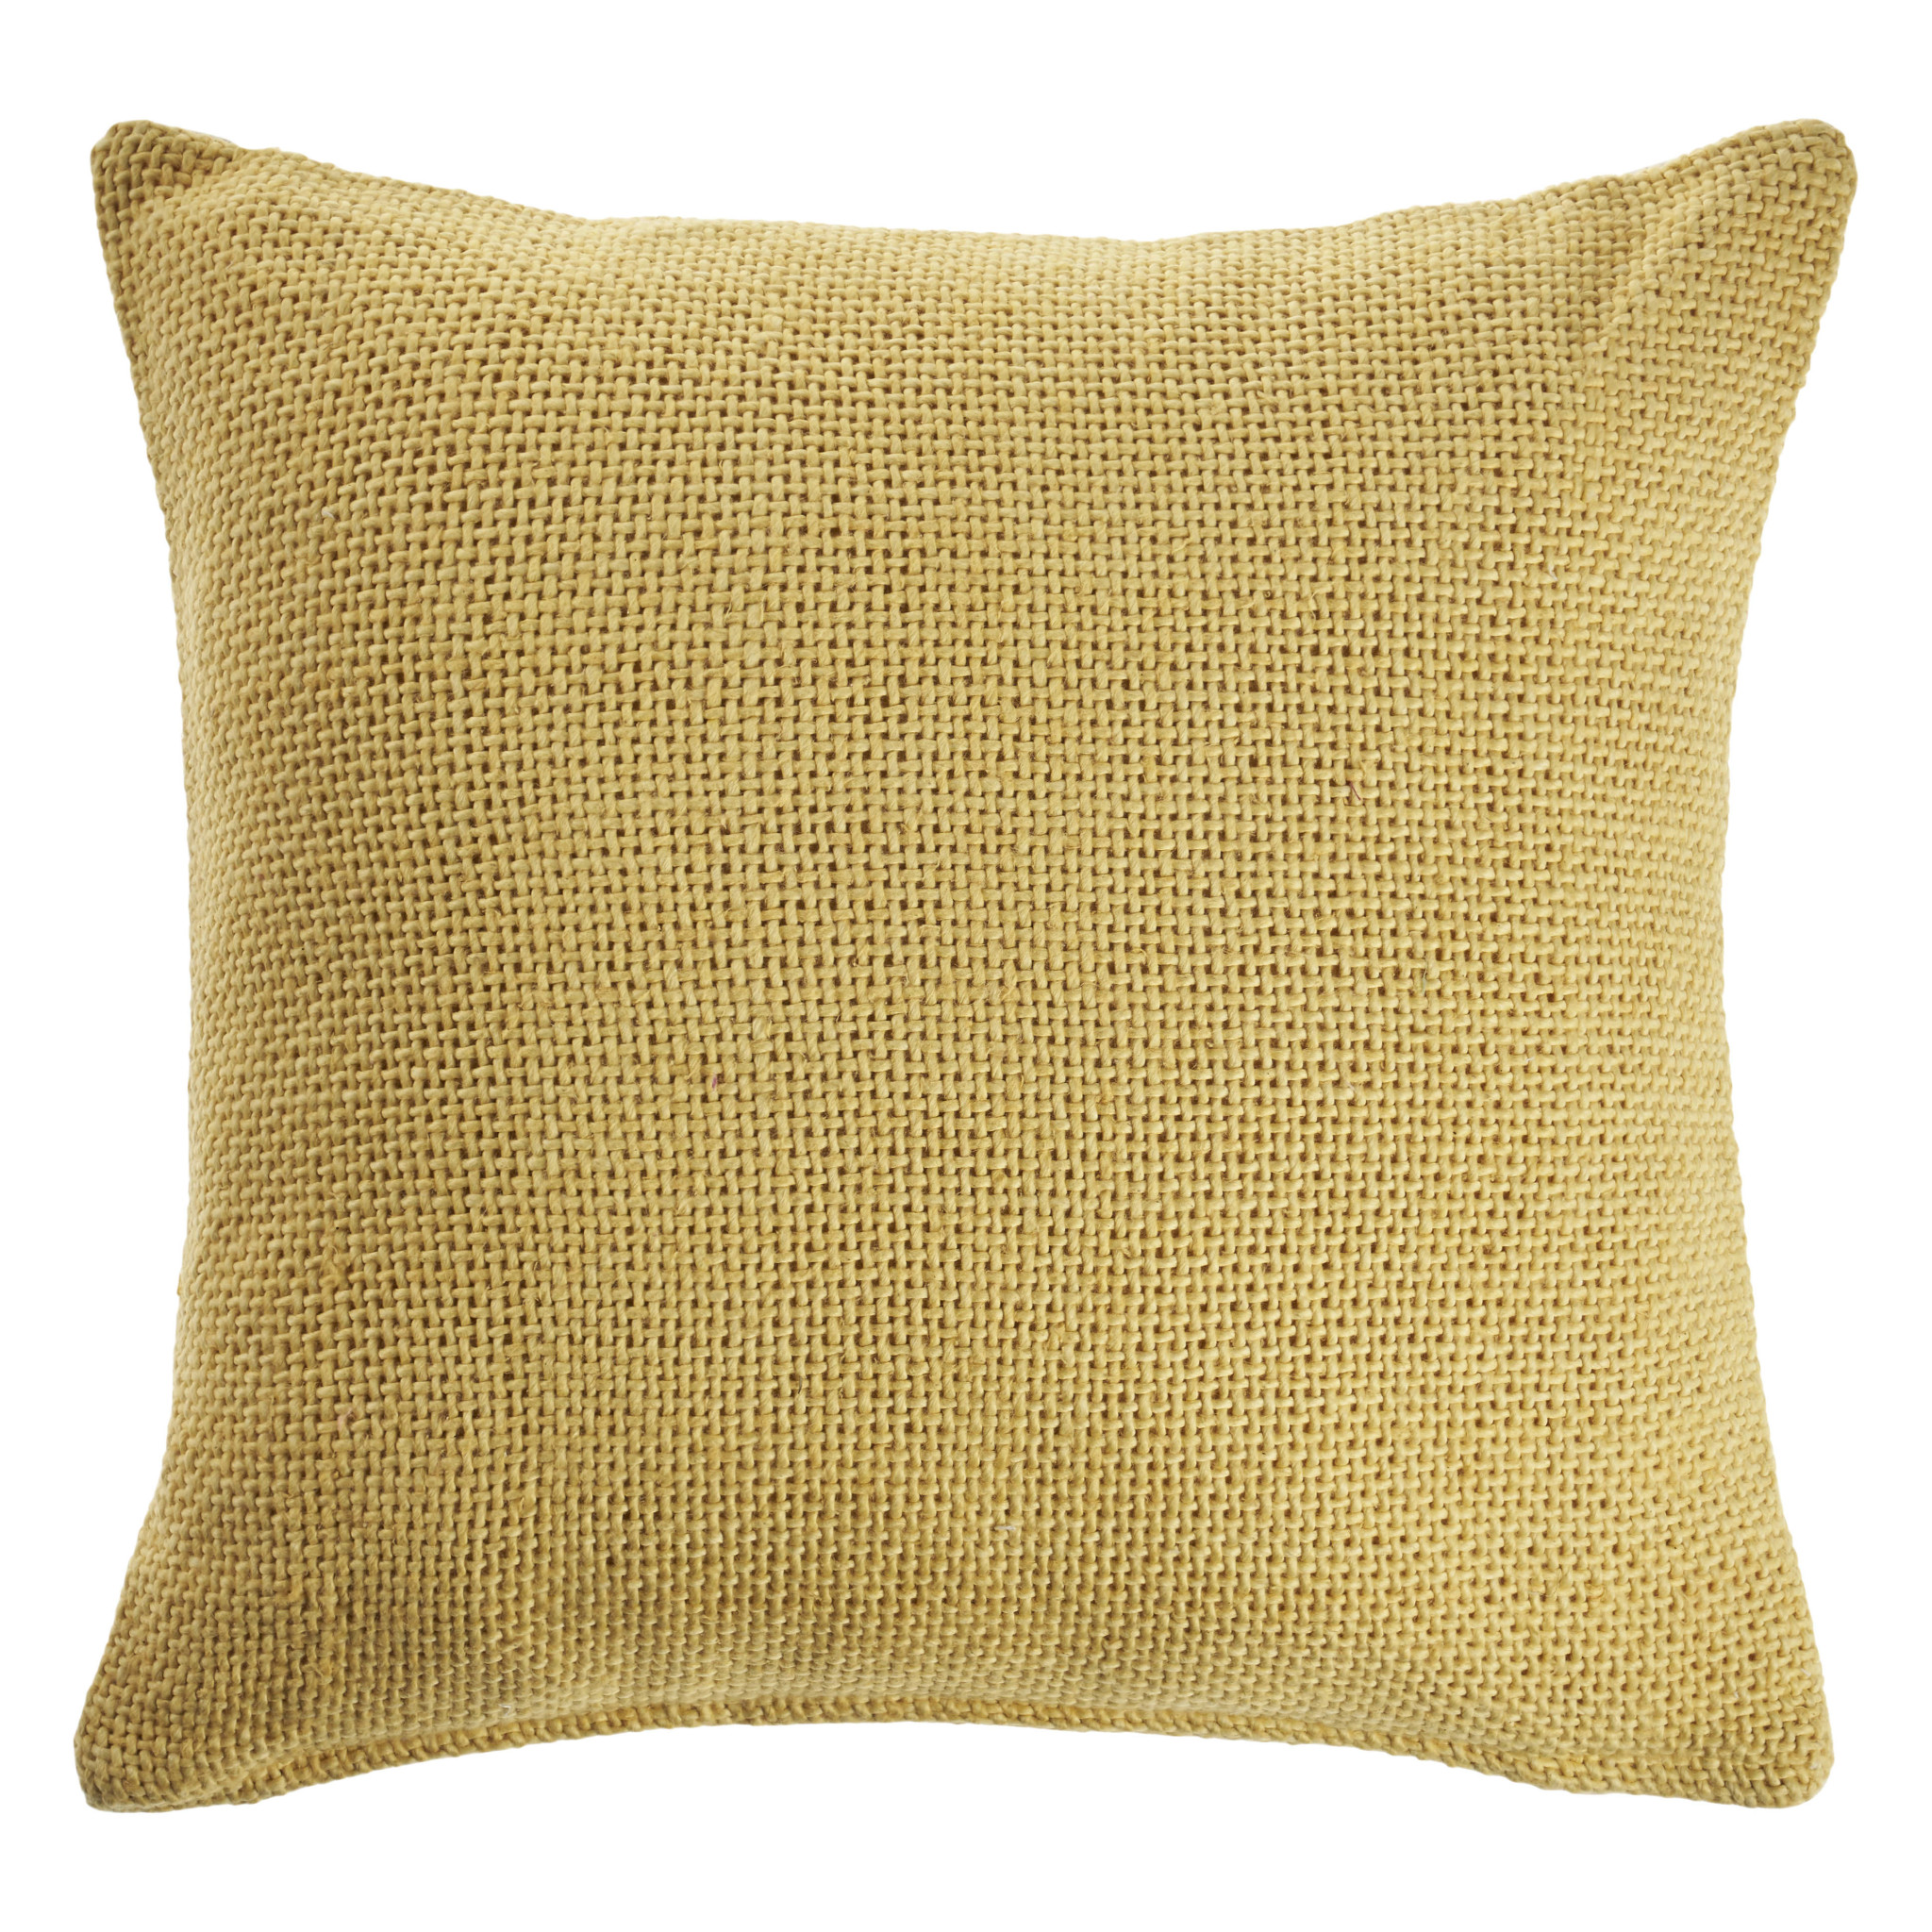 18" X 18" Yellow 100% Cotton Zippered Pillow-516853-1